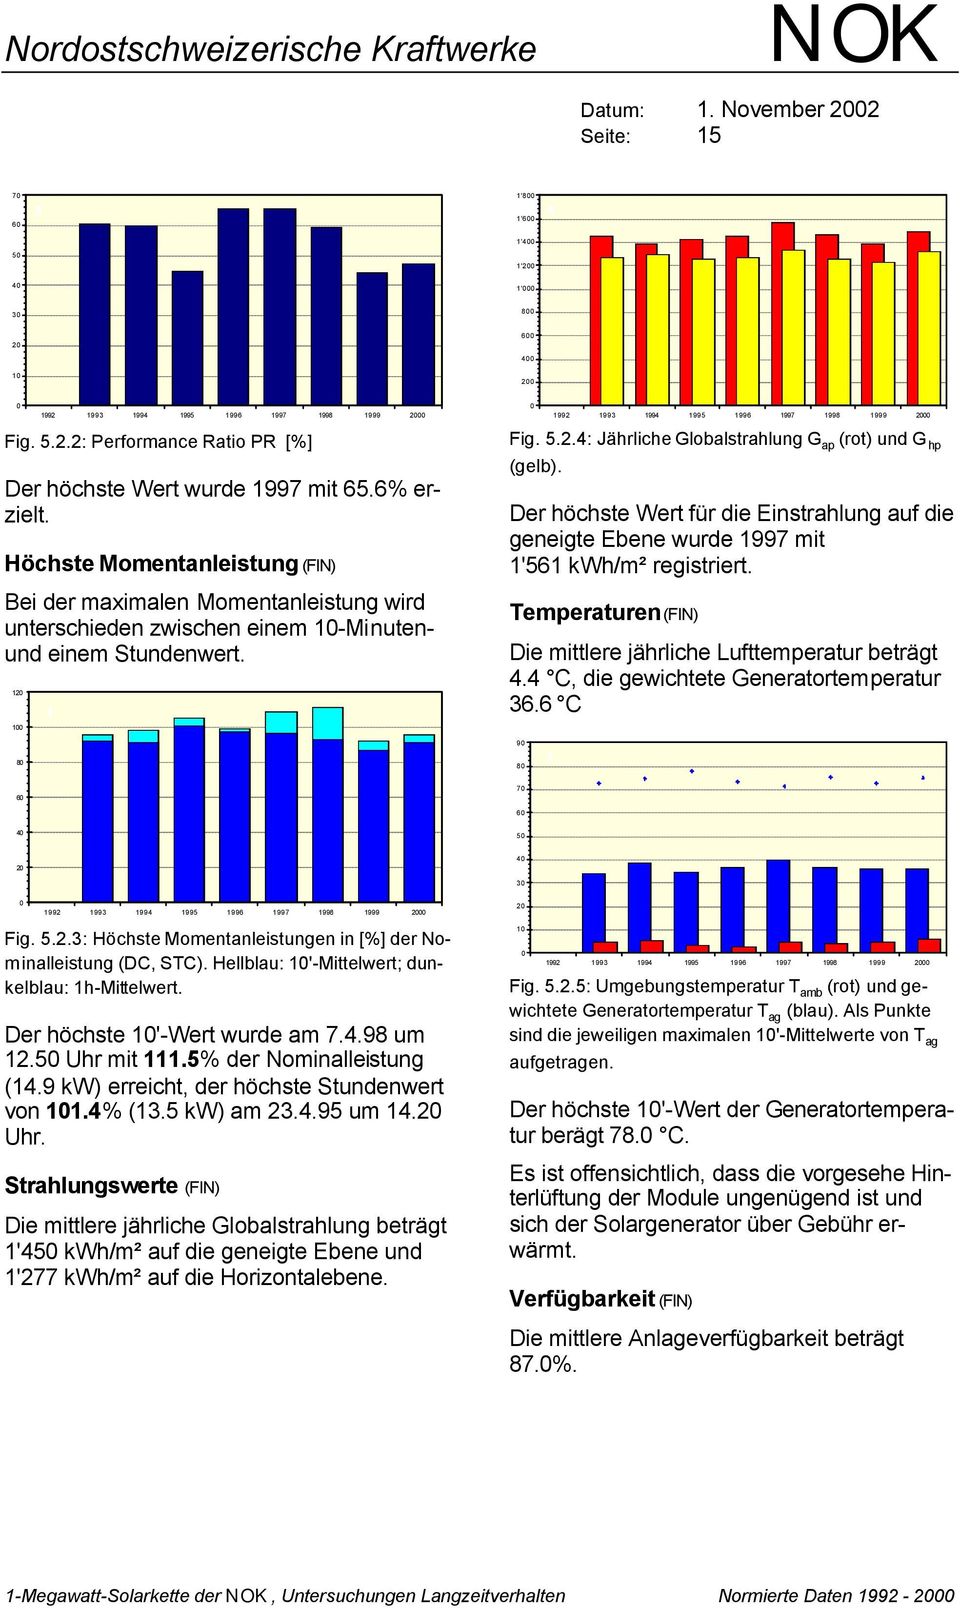 1 Fig. 5.2.4: Jährliche Globalstrahlung G ap (rot) und G hp (gelb). Der höchste Wert für die Einstrahlung auf die geneigte Ebene wurde 1997 mit 1'561 kwh/m² registriert.